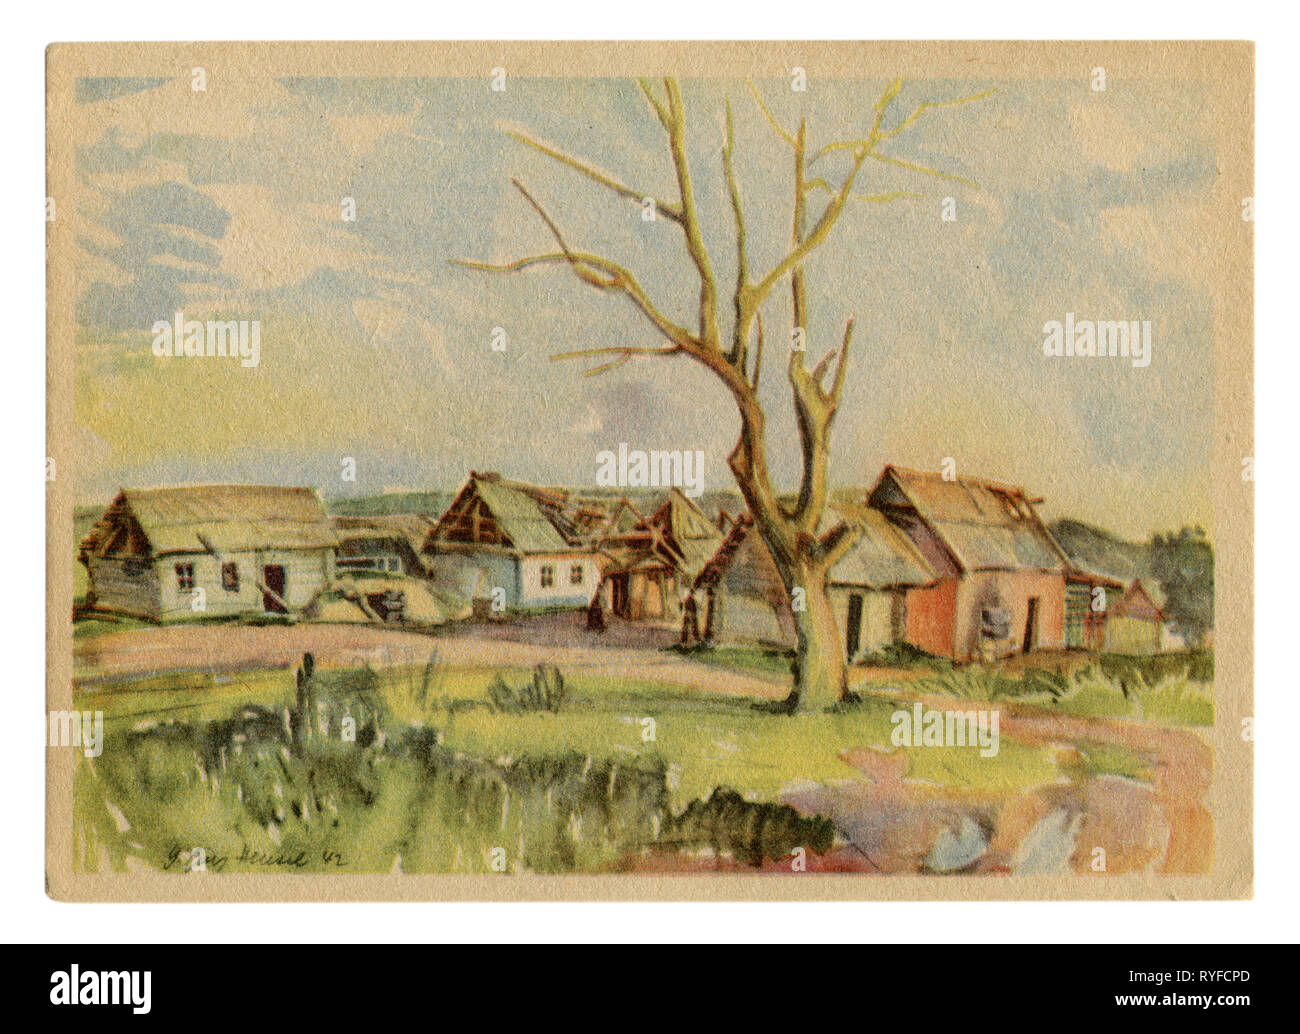 Deutsche Historische Postkarte: Landschaft der sowjetischen Dorf mit zerstörten Holzhütten mit einem trockenen Baum. Russland. Das Gebiet von Reich besetzt Stockfoto